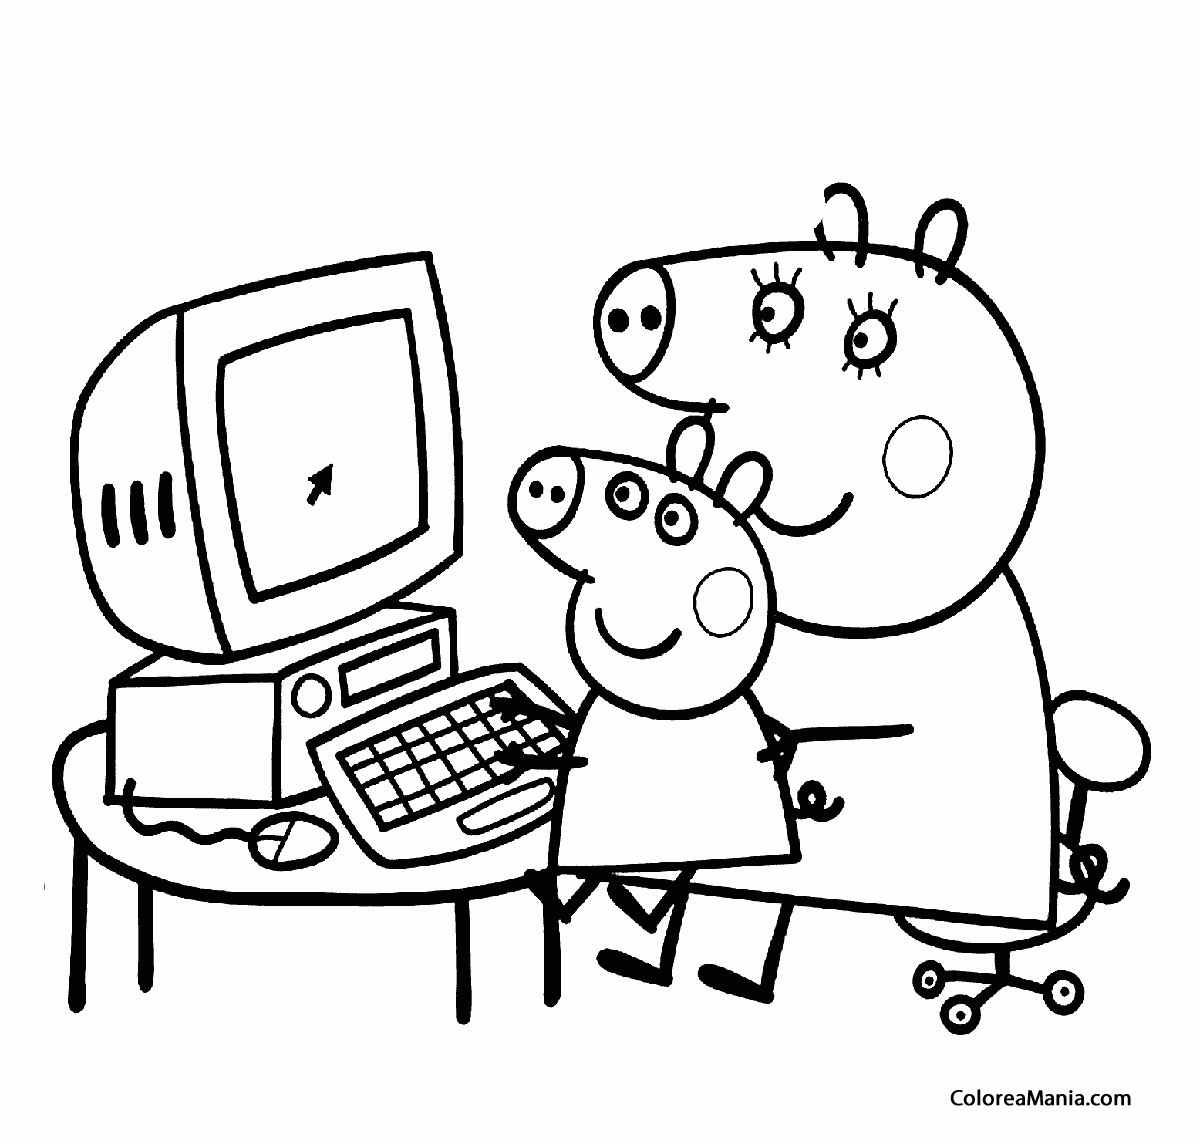 Colorear Mama Pig y Peppa Pig en el ordenador